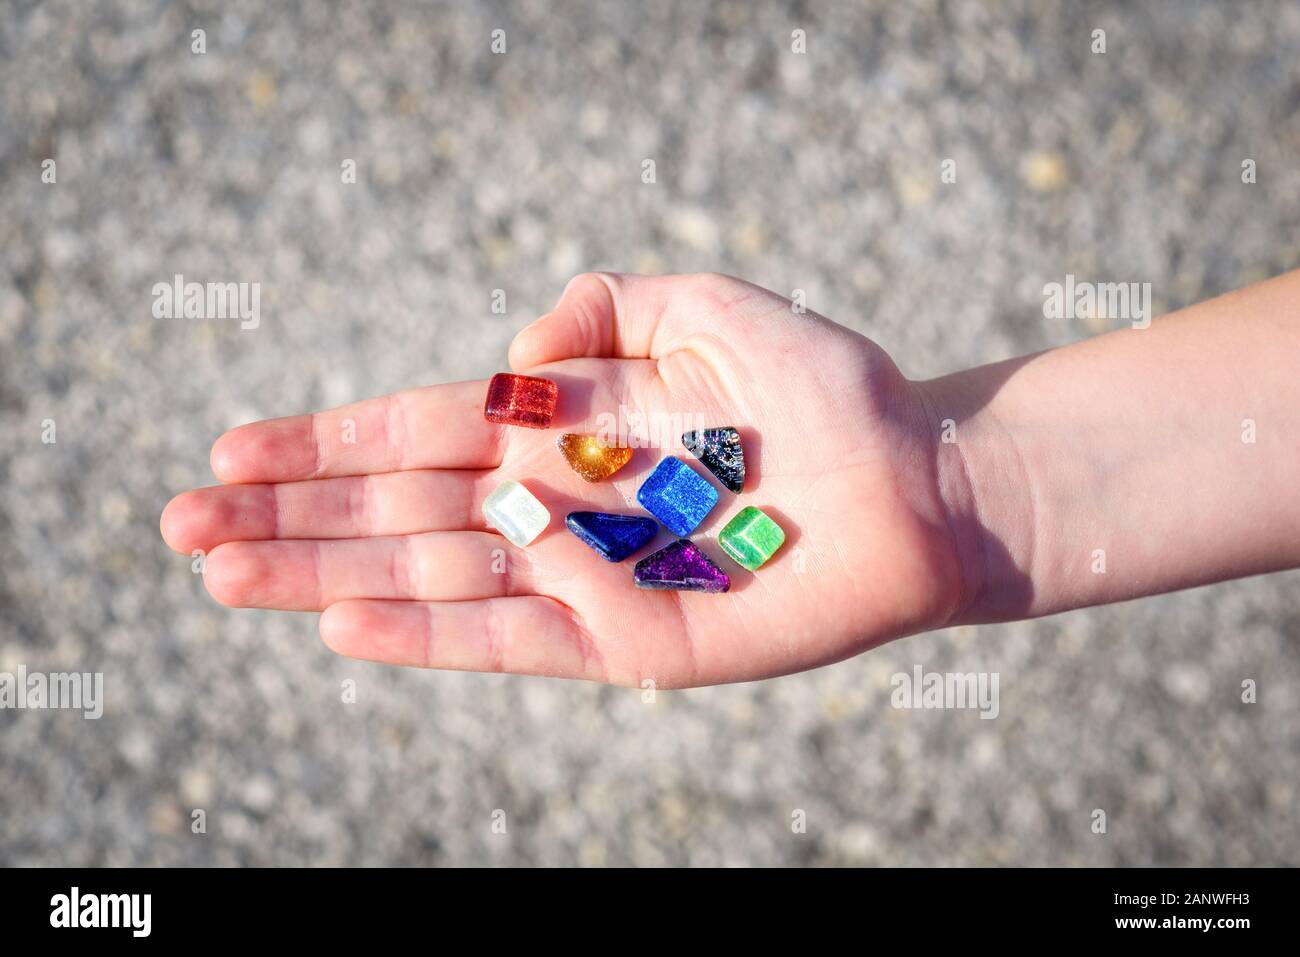 Rockhounding mostra un pietre colorate sulla luce del giorno. Immagine da gem mining vacanze con bambini. Foto Stock